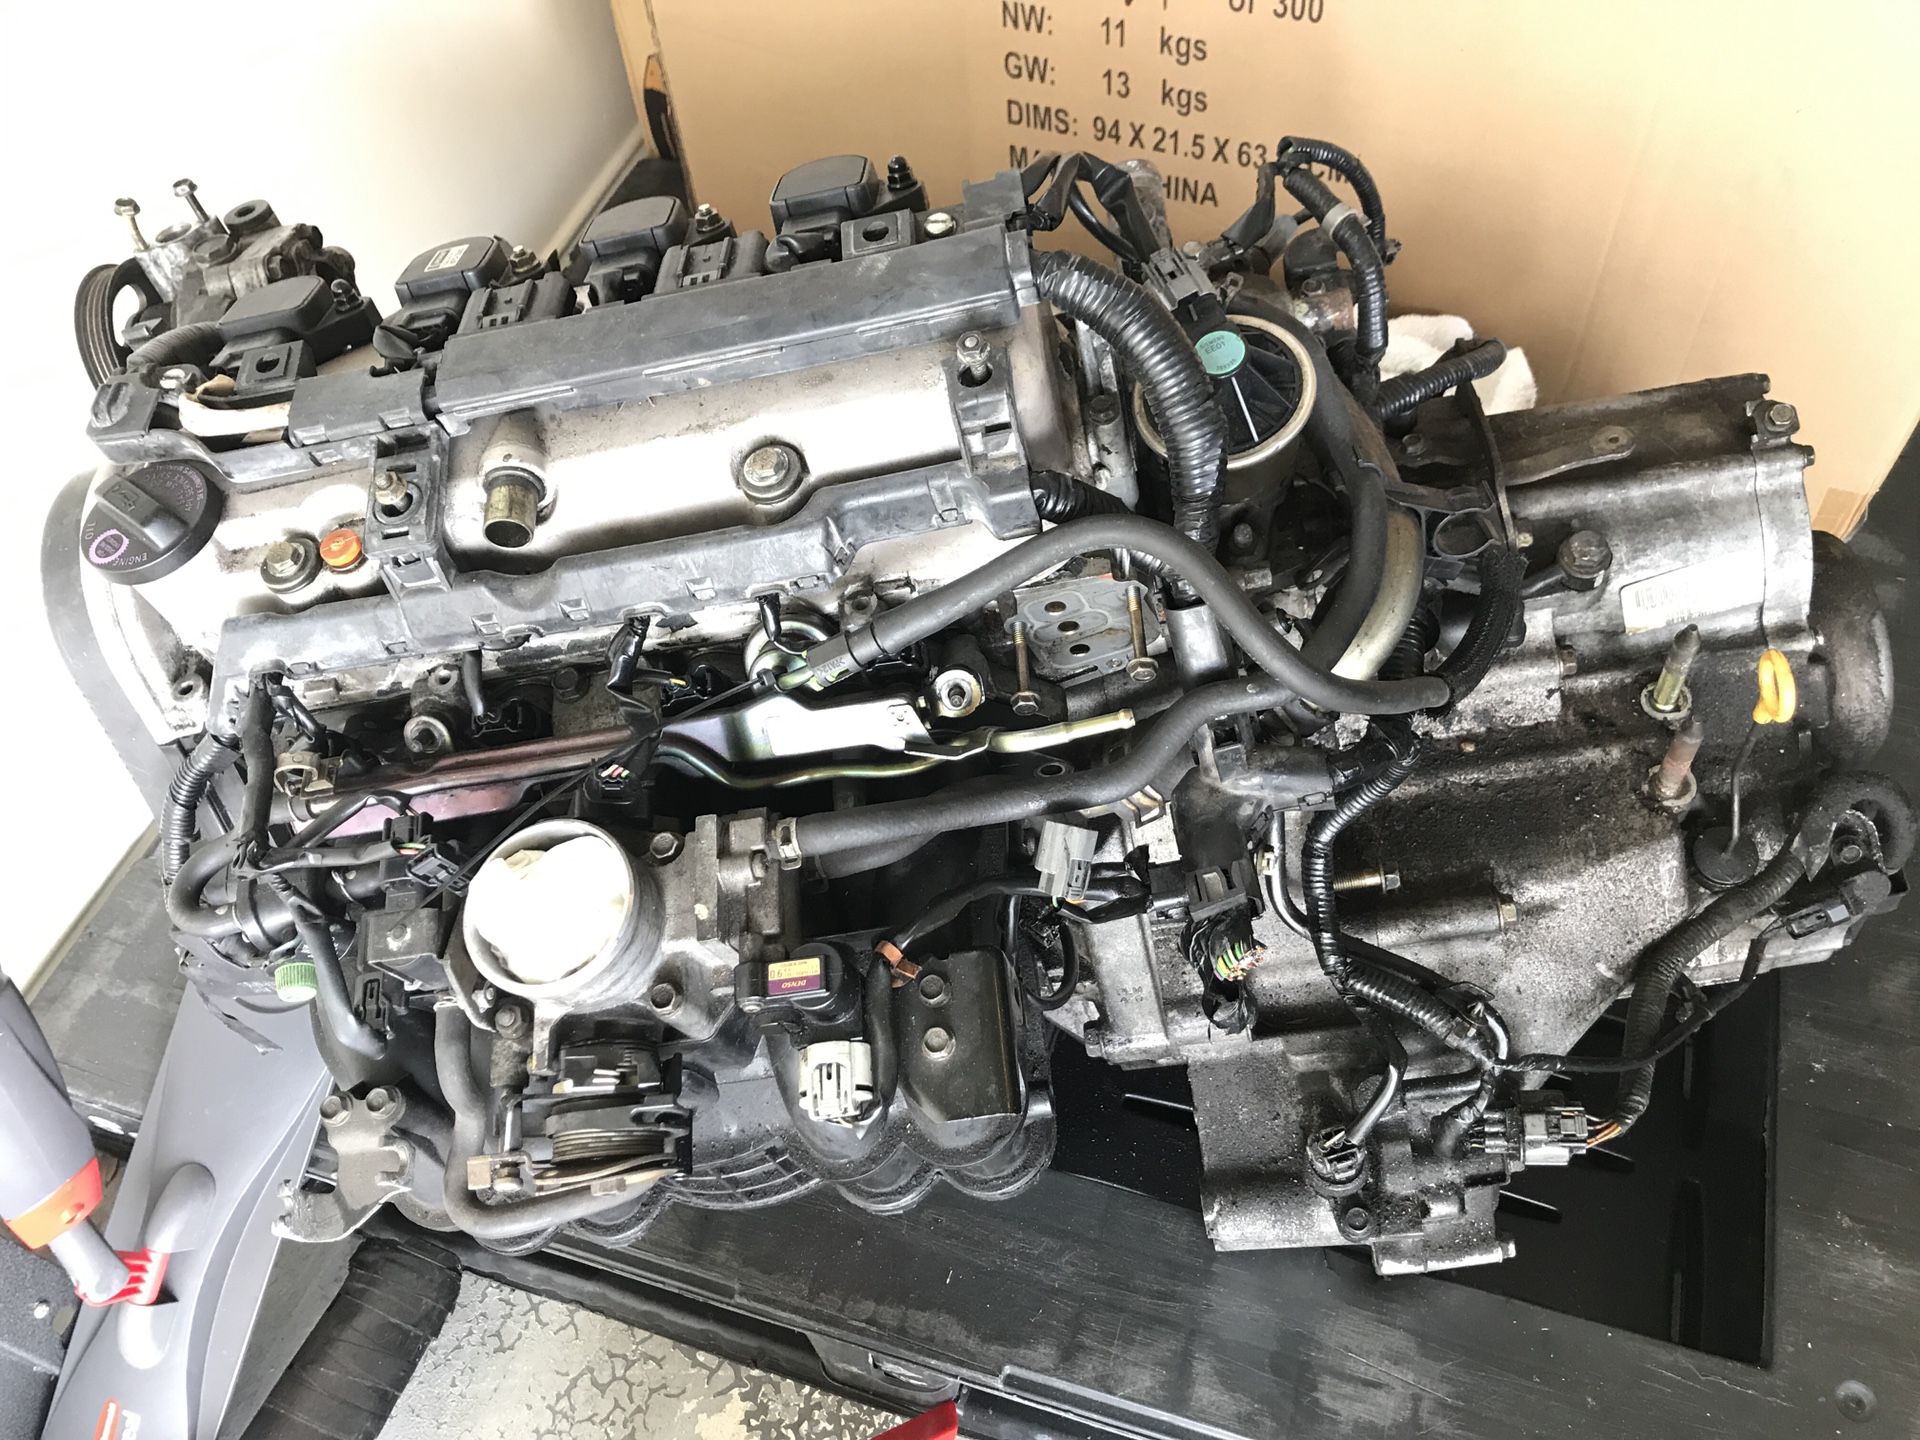 2001 Honda Civic Vtec Engine for parts or repair